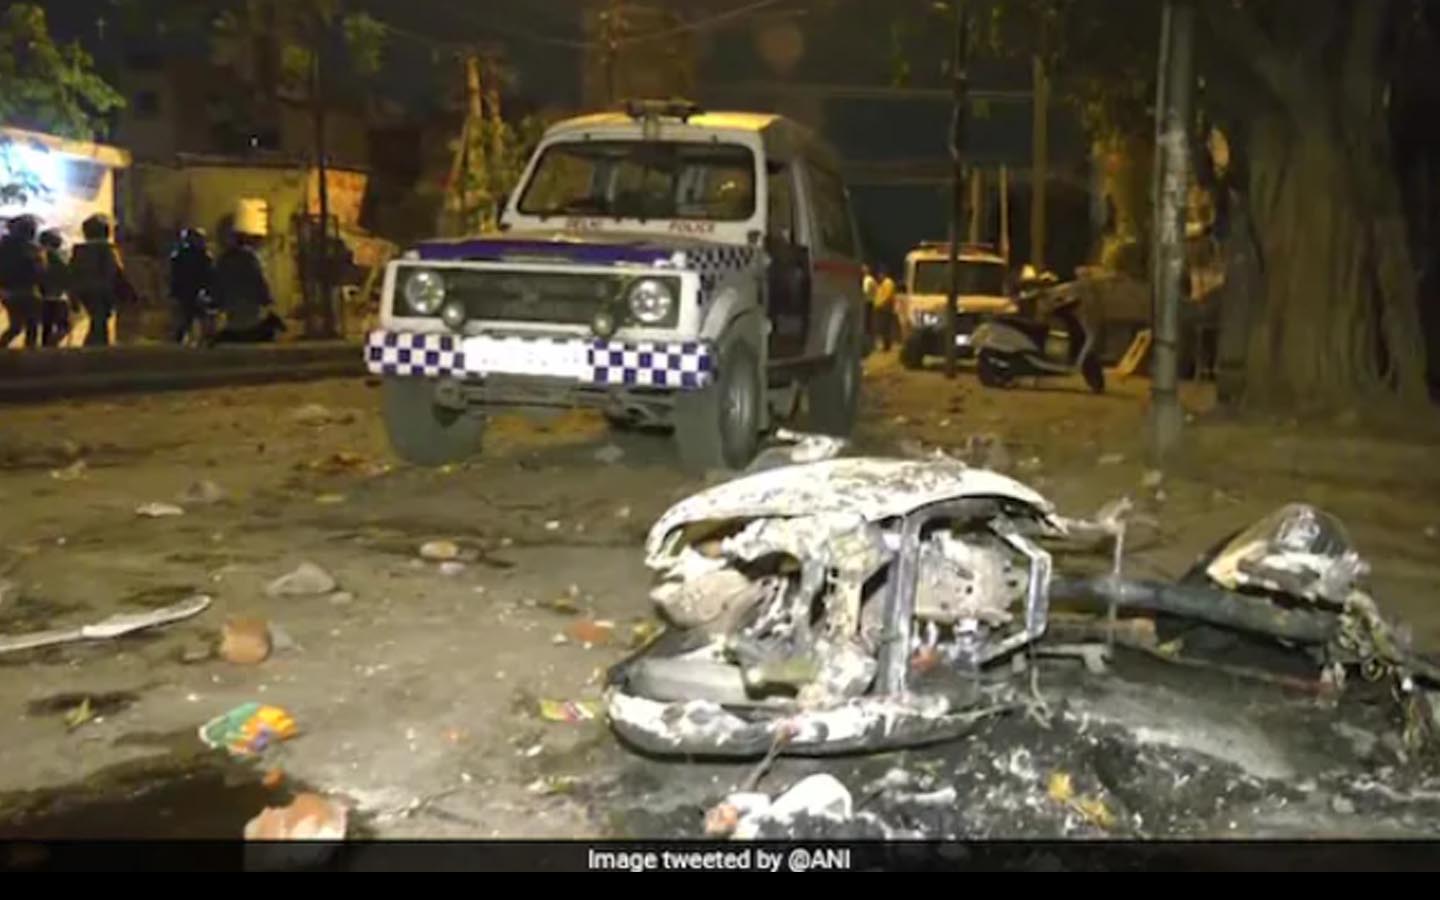 Gesekan Muslim Vs Hindu Pecah di New Delhi, 1 Tewas